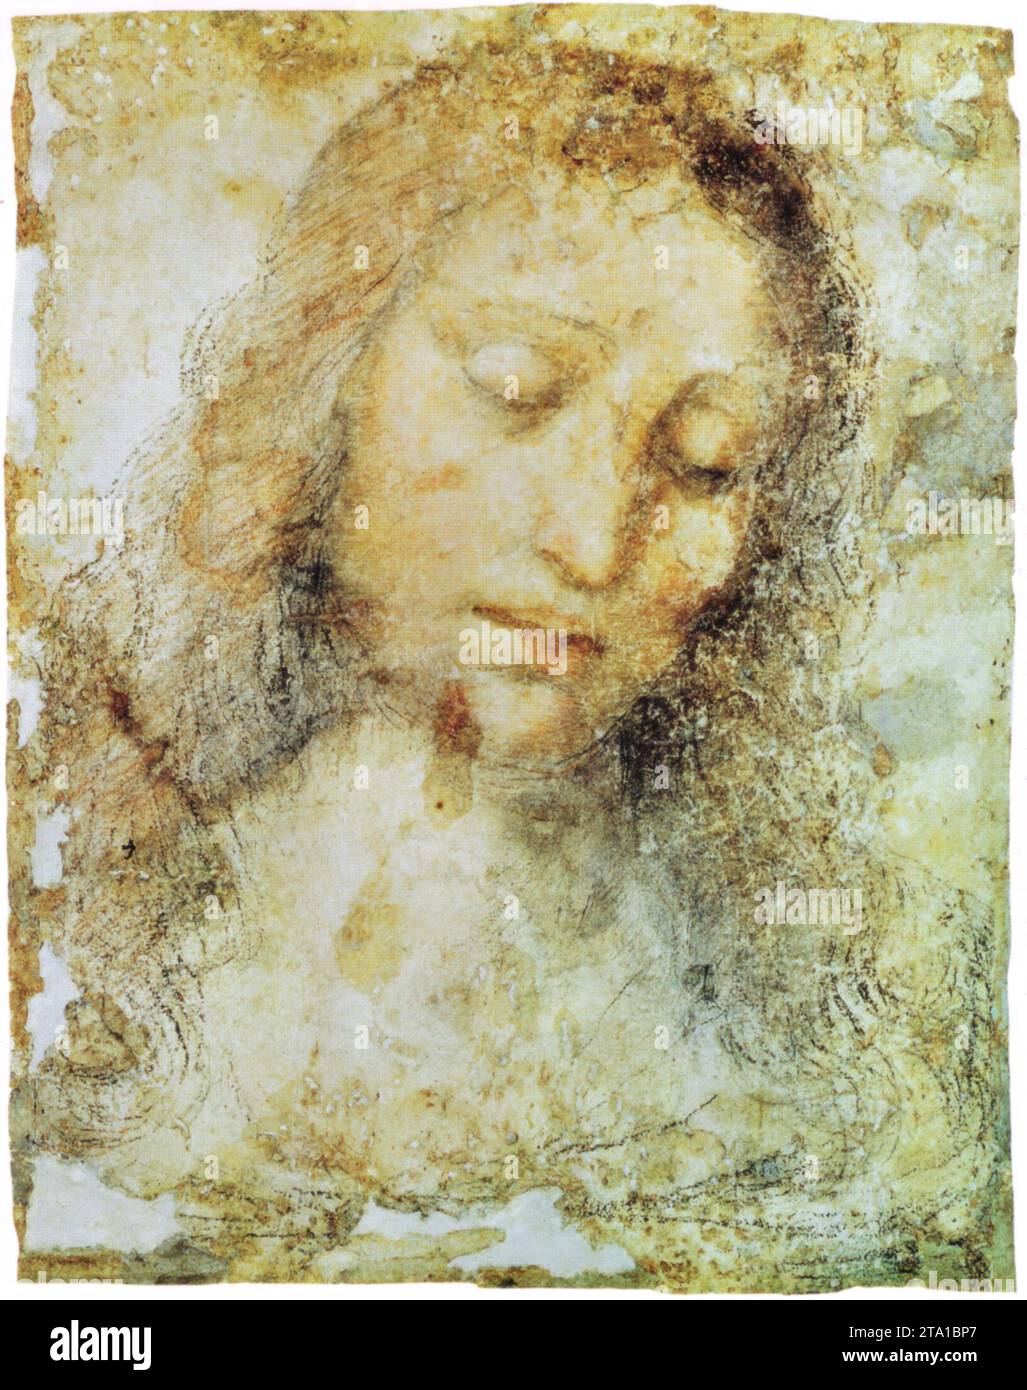 Leonardo Da Vinci - Study for the Last Supper - head of Christ Stock Photo